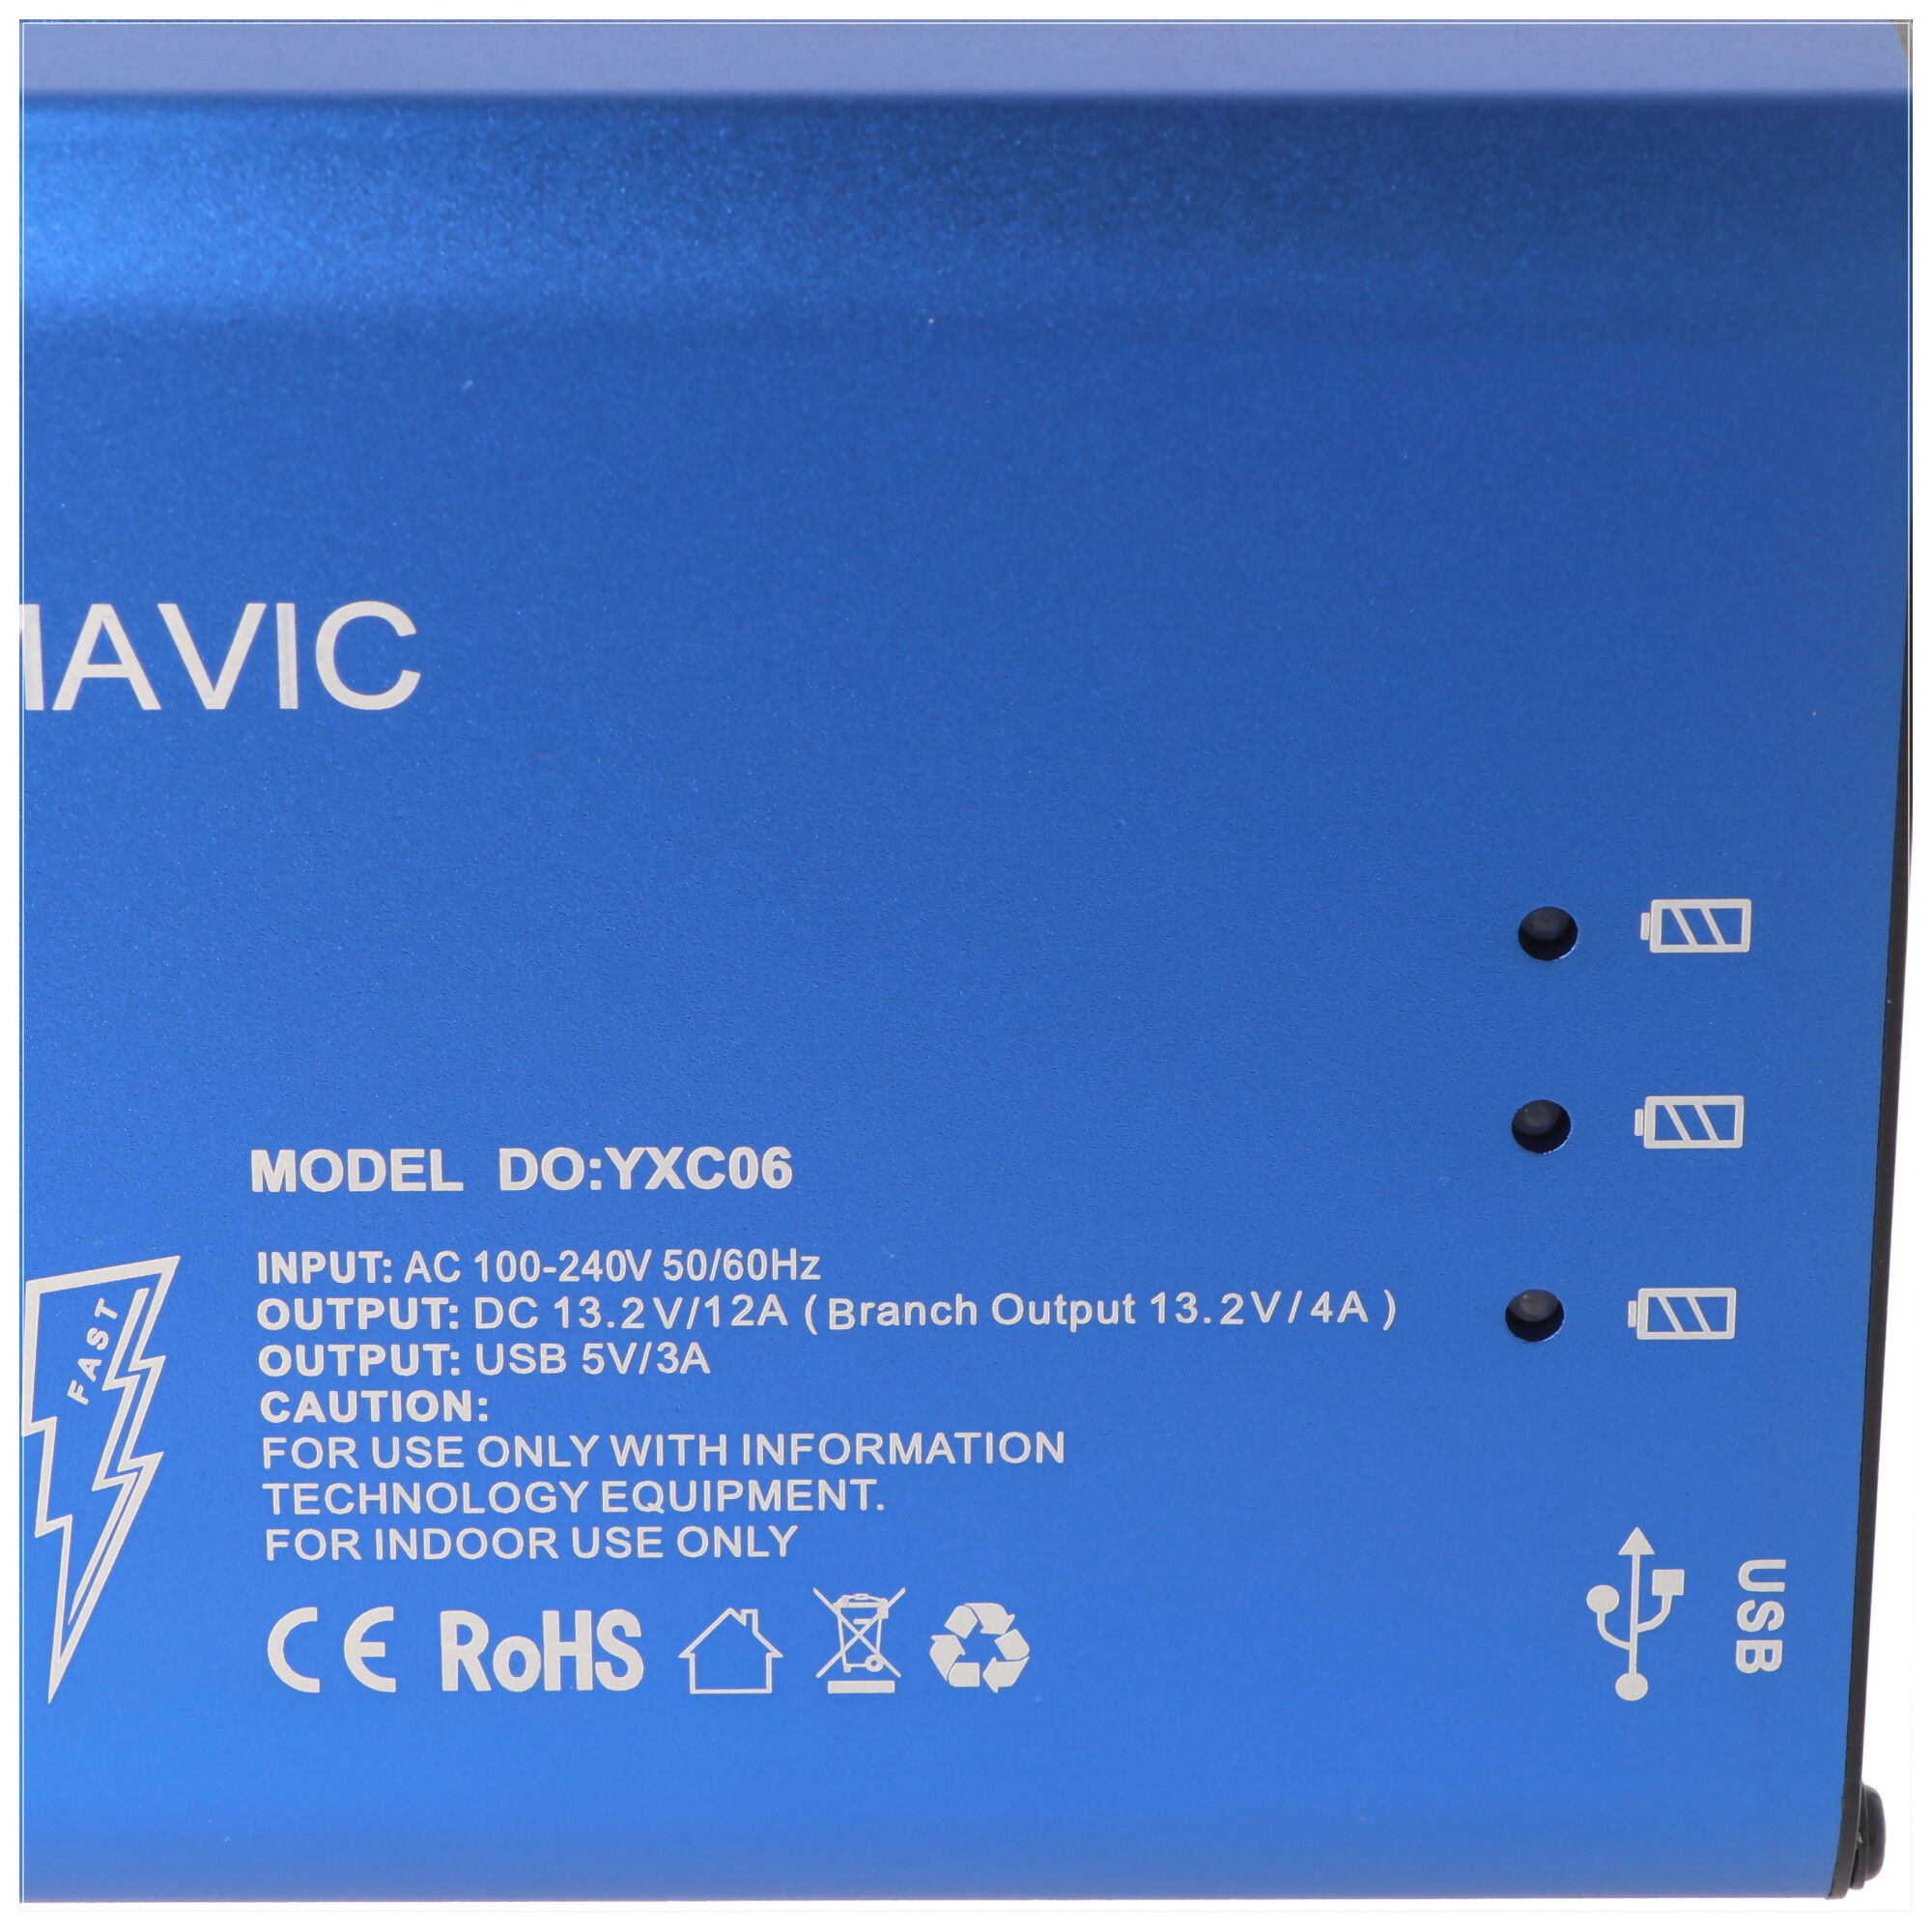 5-in-1 Ladegerät passend für DJI Mavic Pro zum aufladen von DJI Mavic Pro Akkus, der Fernbedienung und einem Smartphone